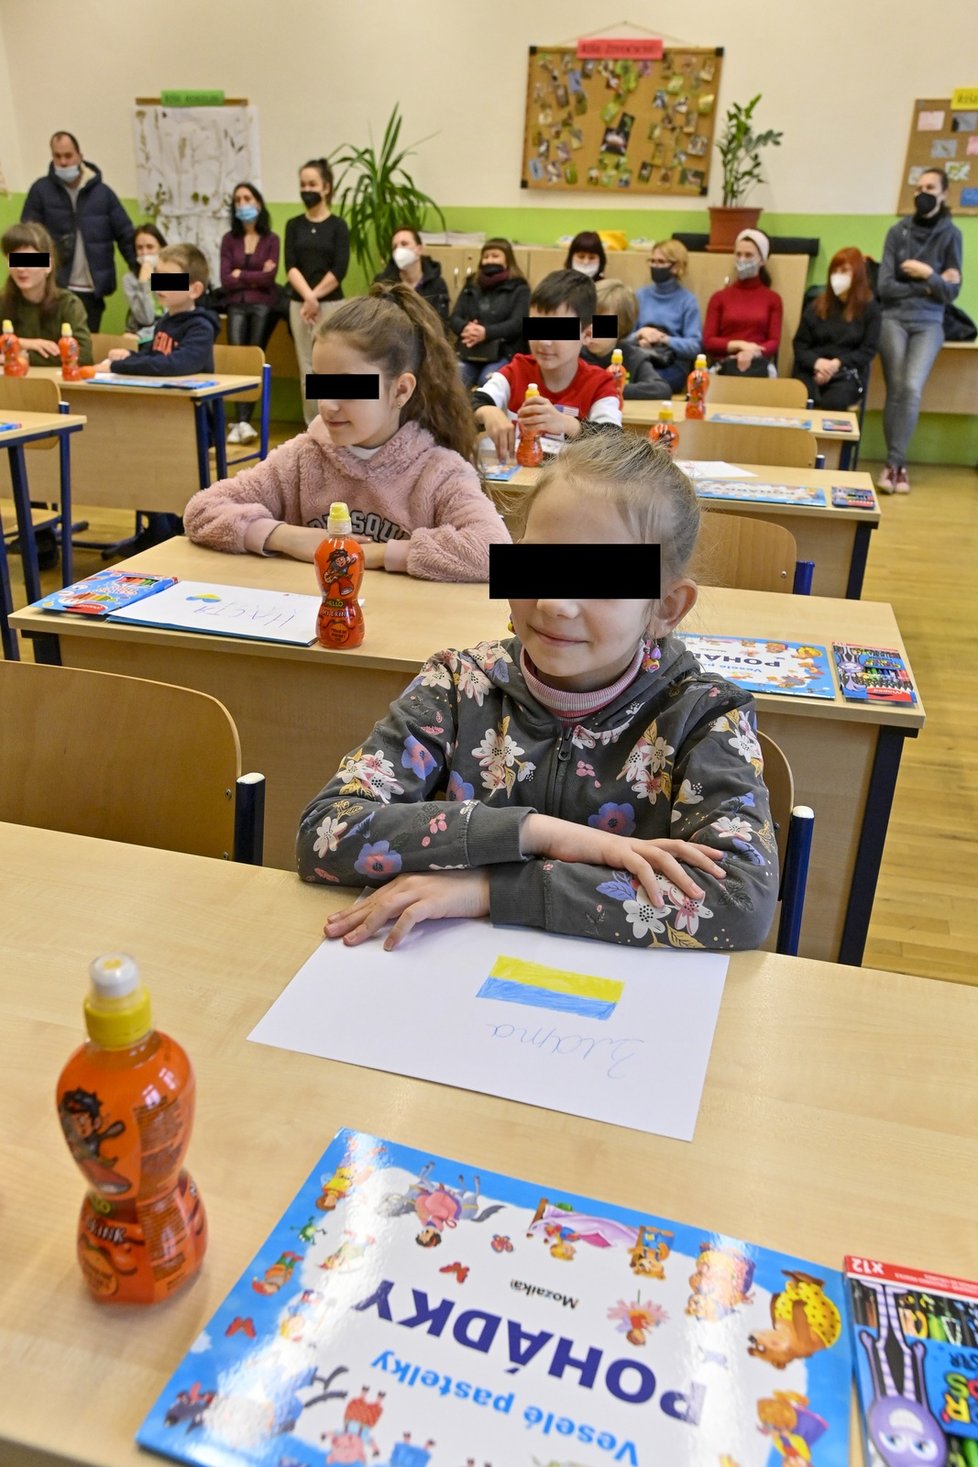 V 1. slovanském gymnázium v Praze 1 začala fungovat jednotřídka pro uprchlíky z Ukrajiny. (7. března 2022)